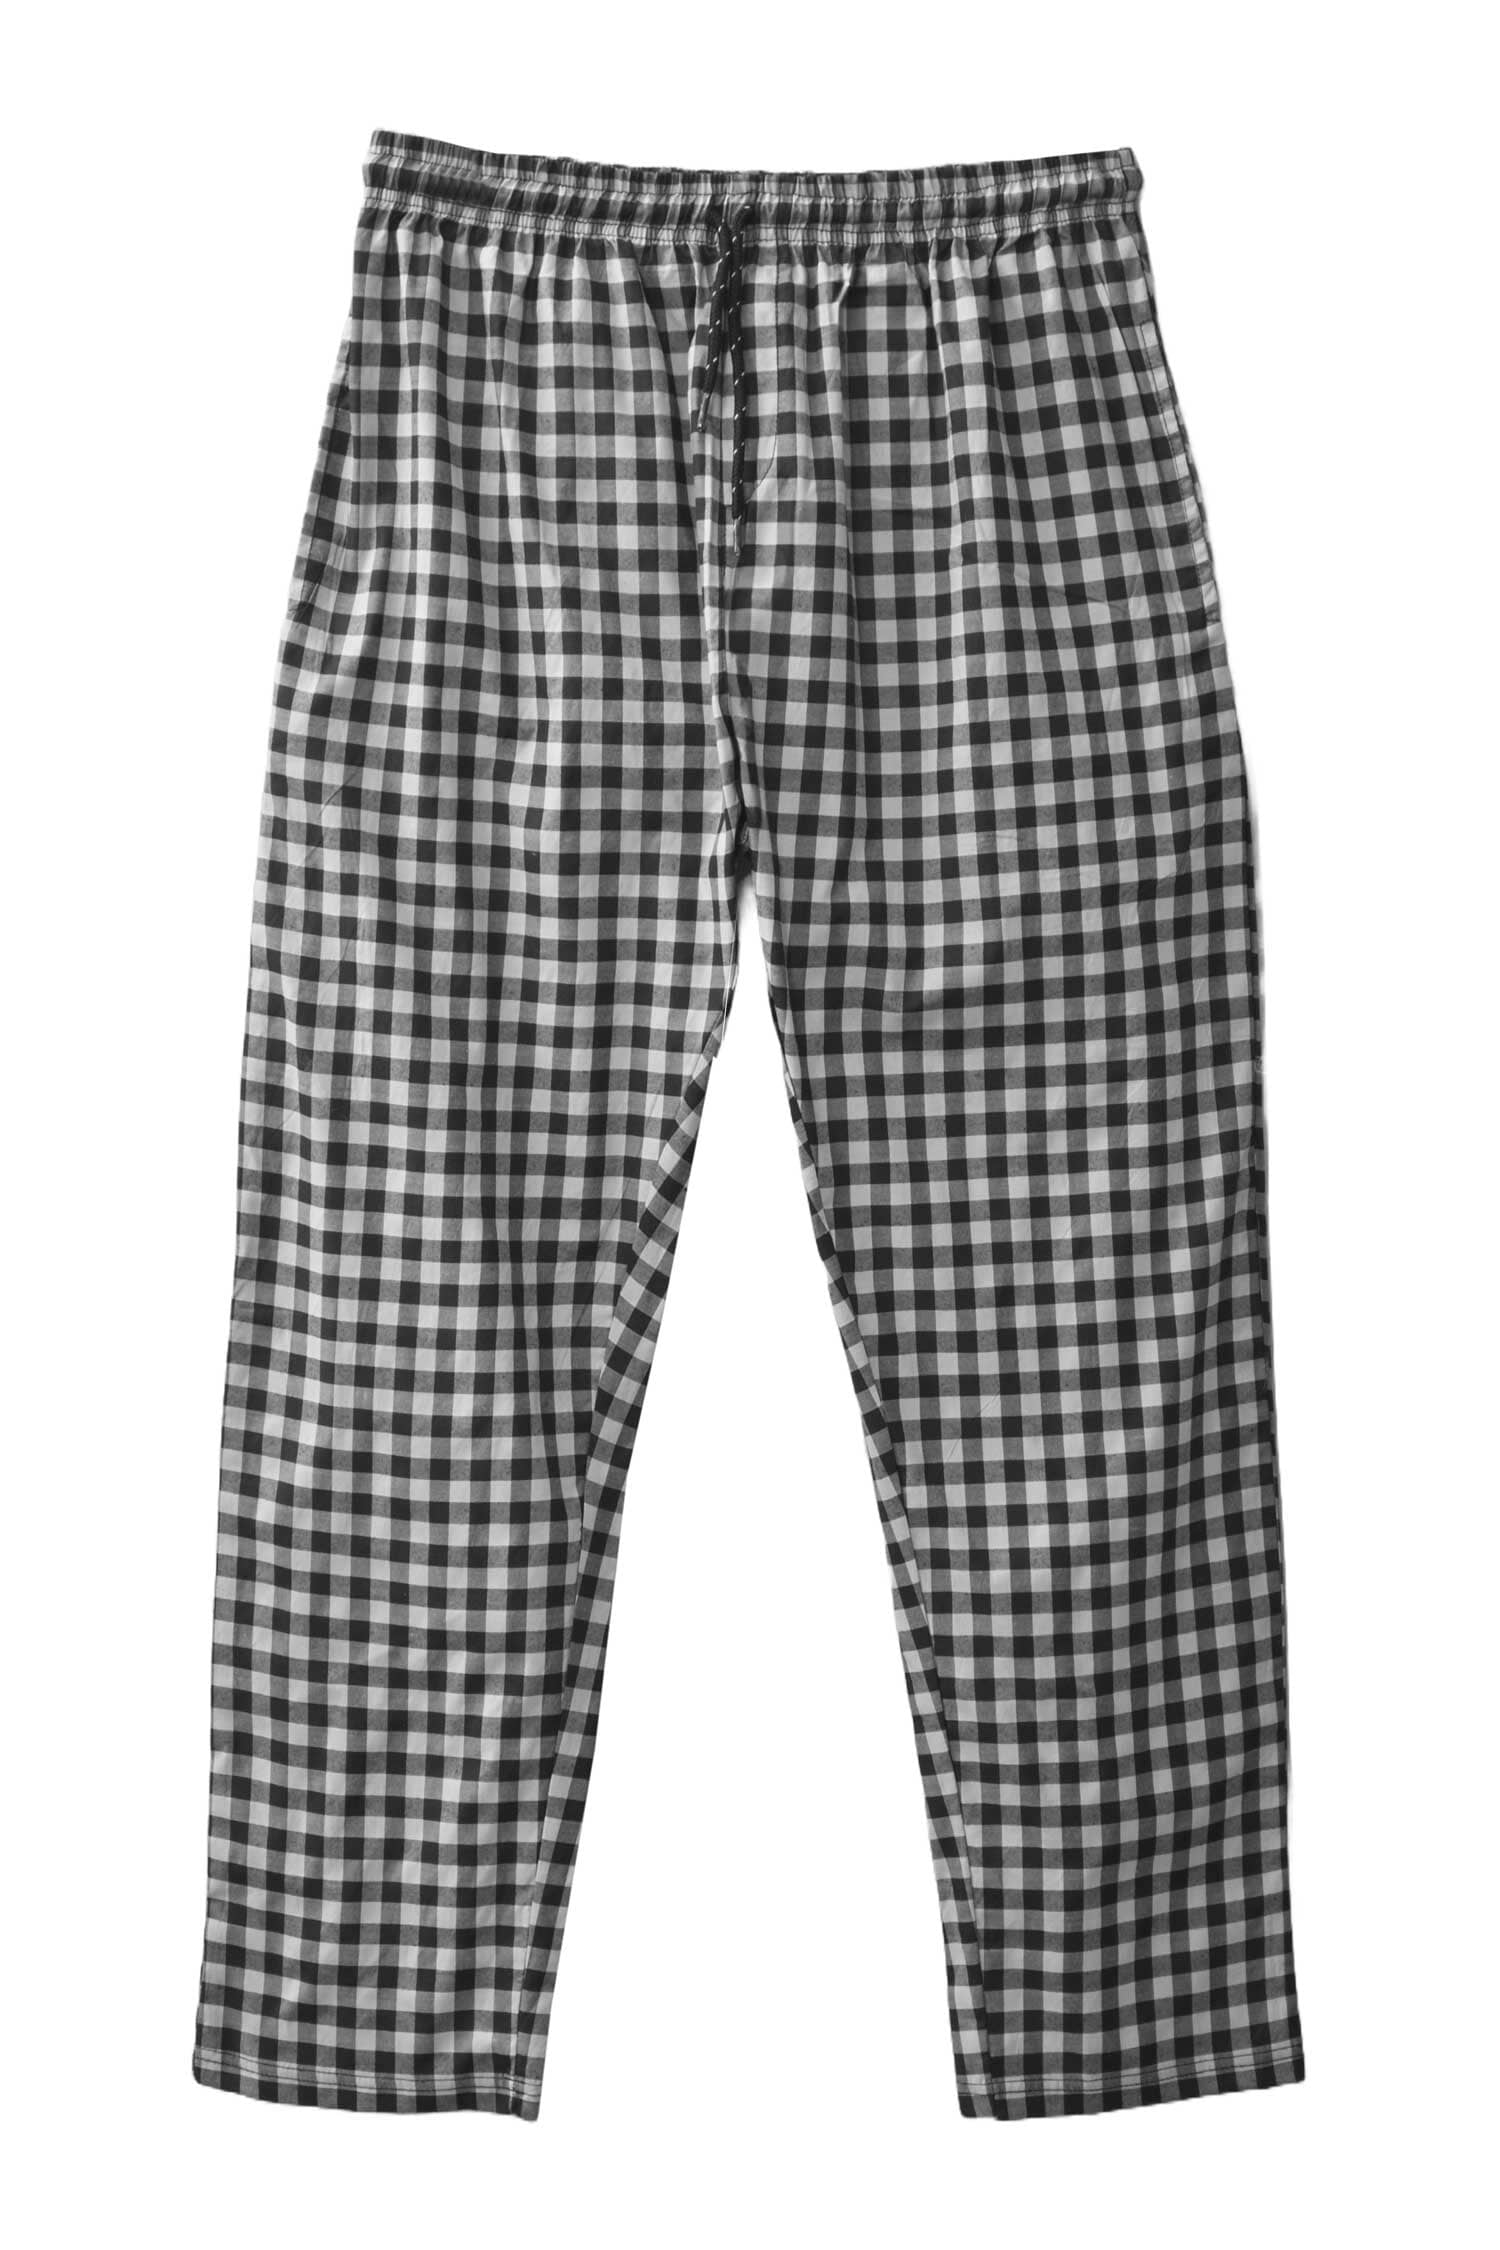 Max 21 Men's Check Design Woven Trousers Men's Trousers SZK 